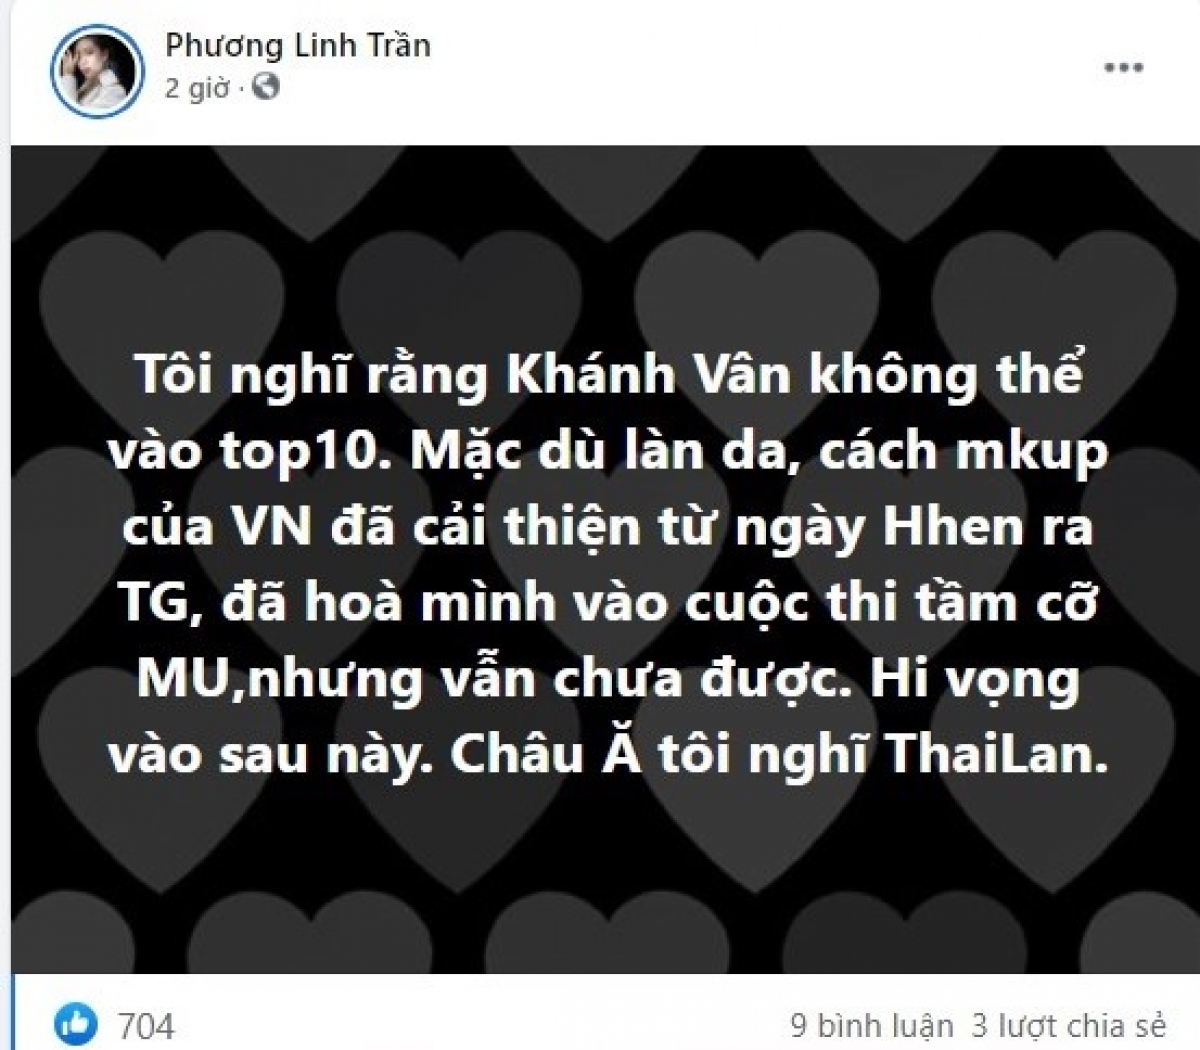 Bài đăng trên trang cá nhân ca sỹ Phương Linh